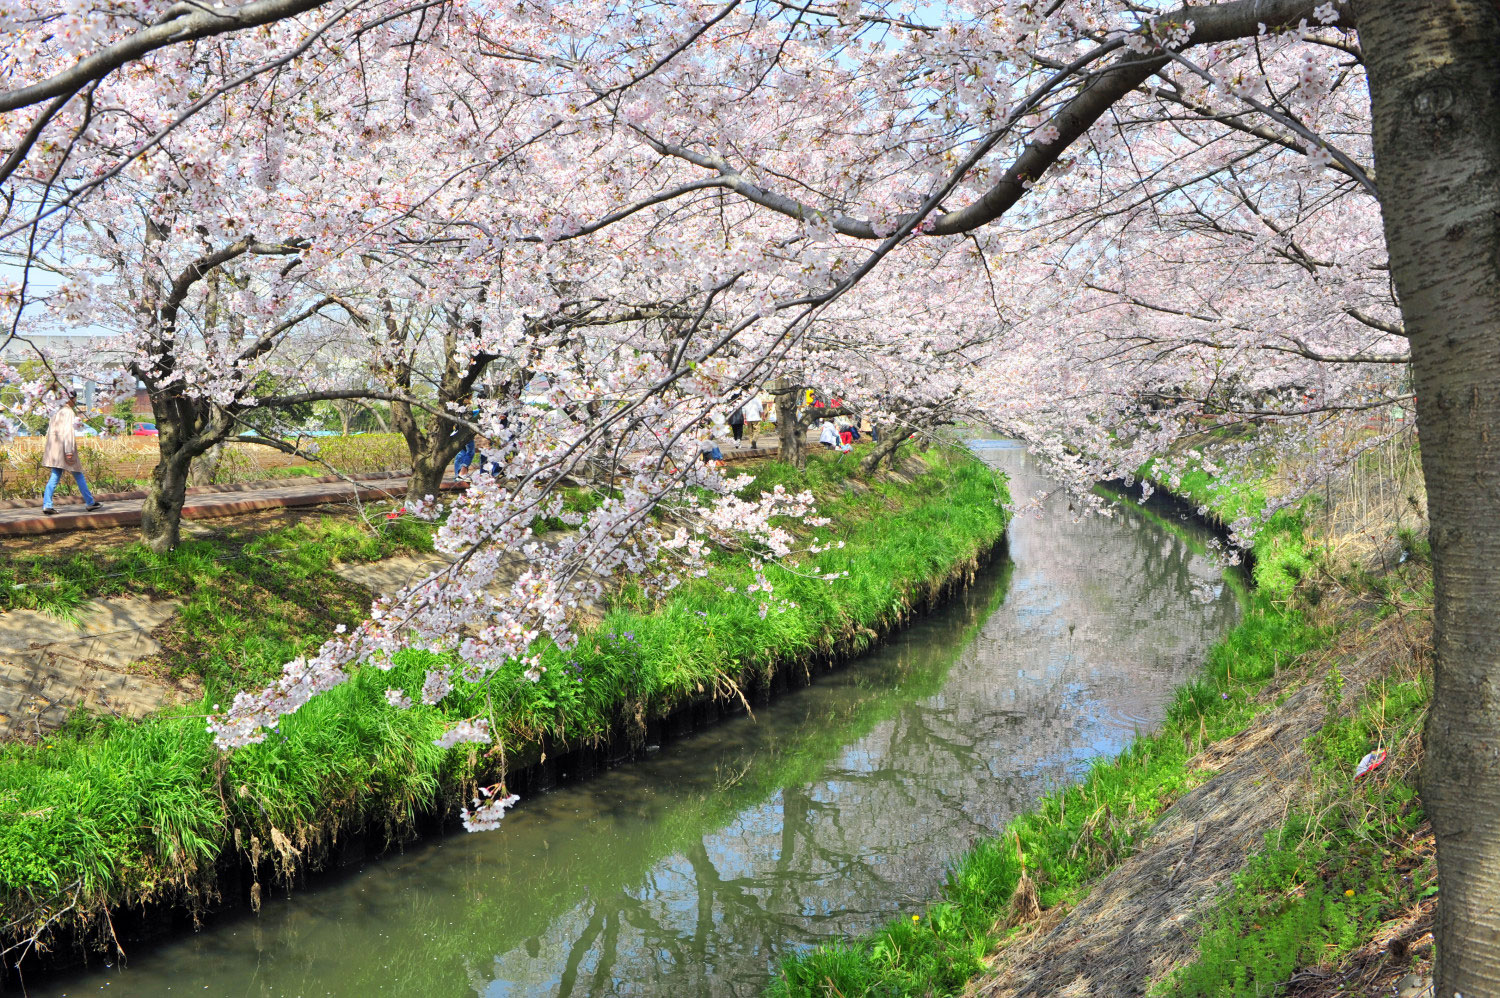 海老川ジョギングロードの桜